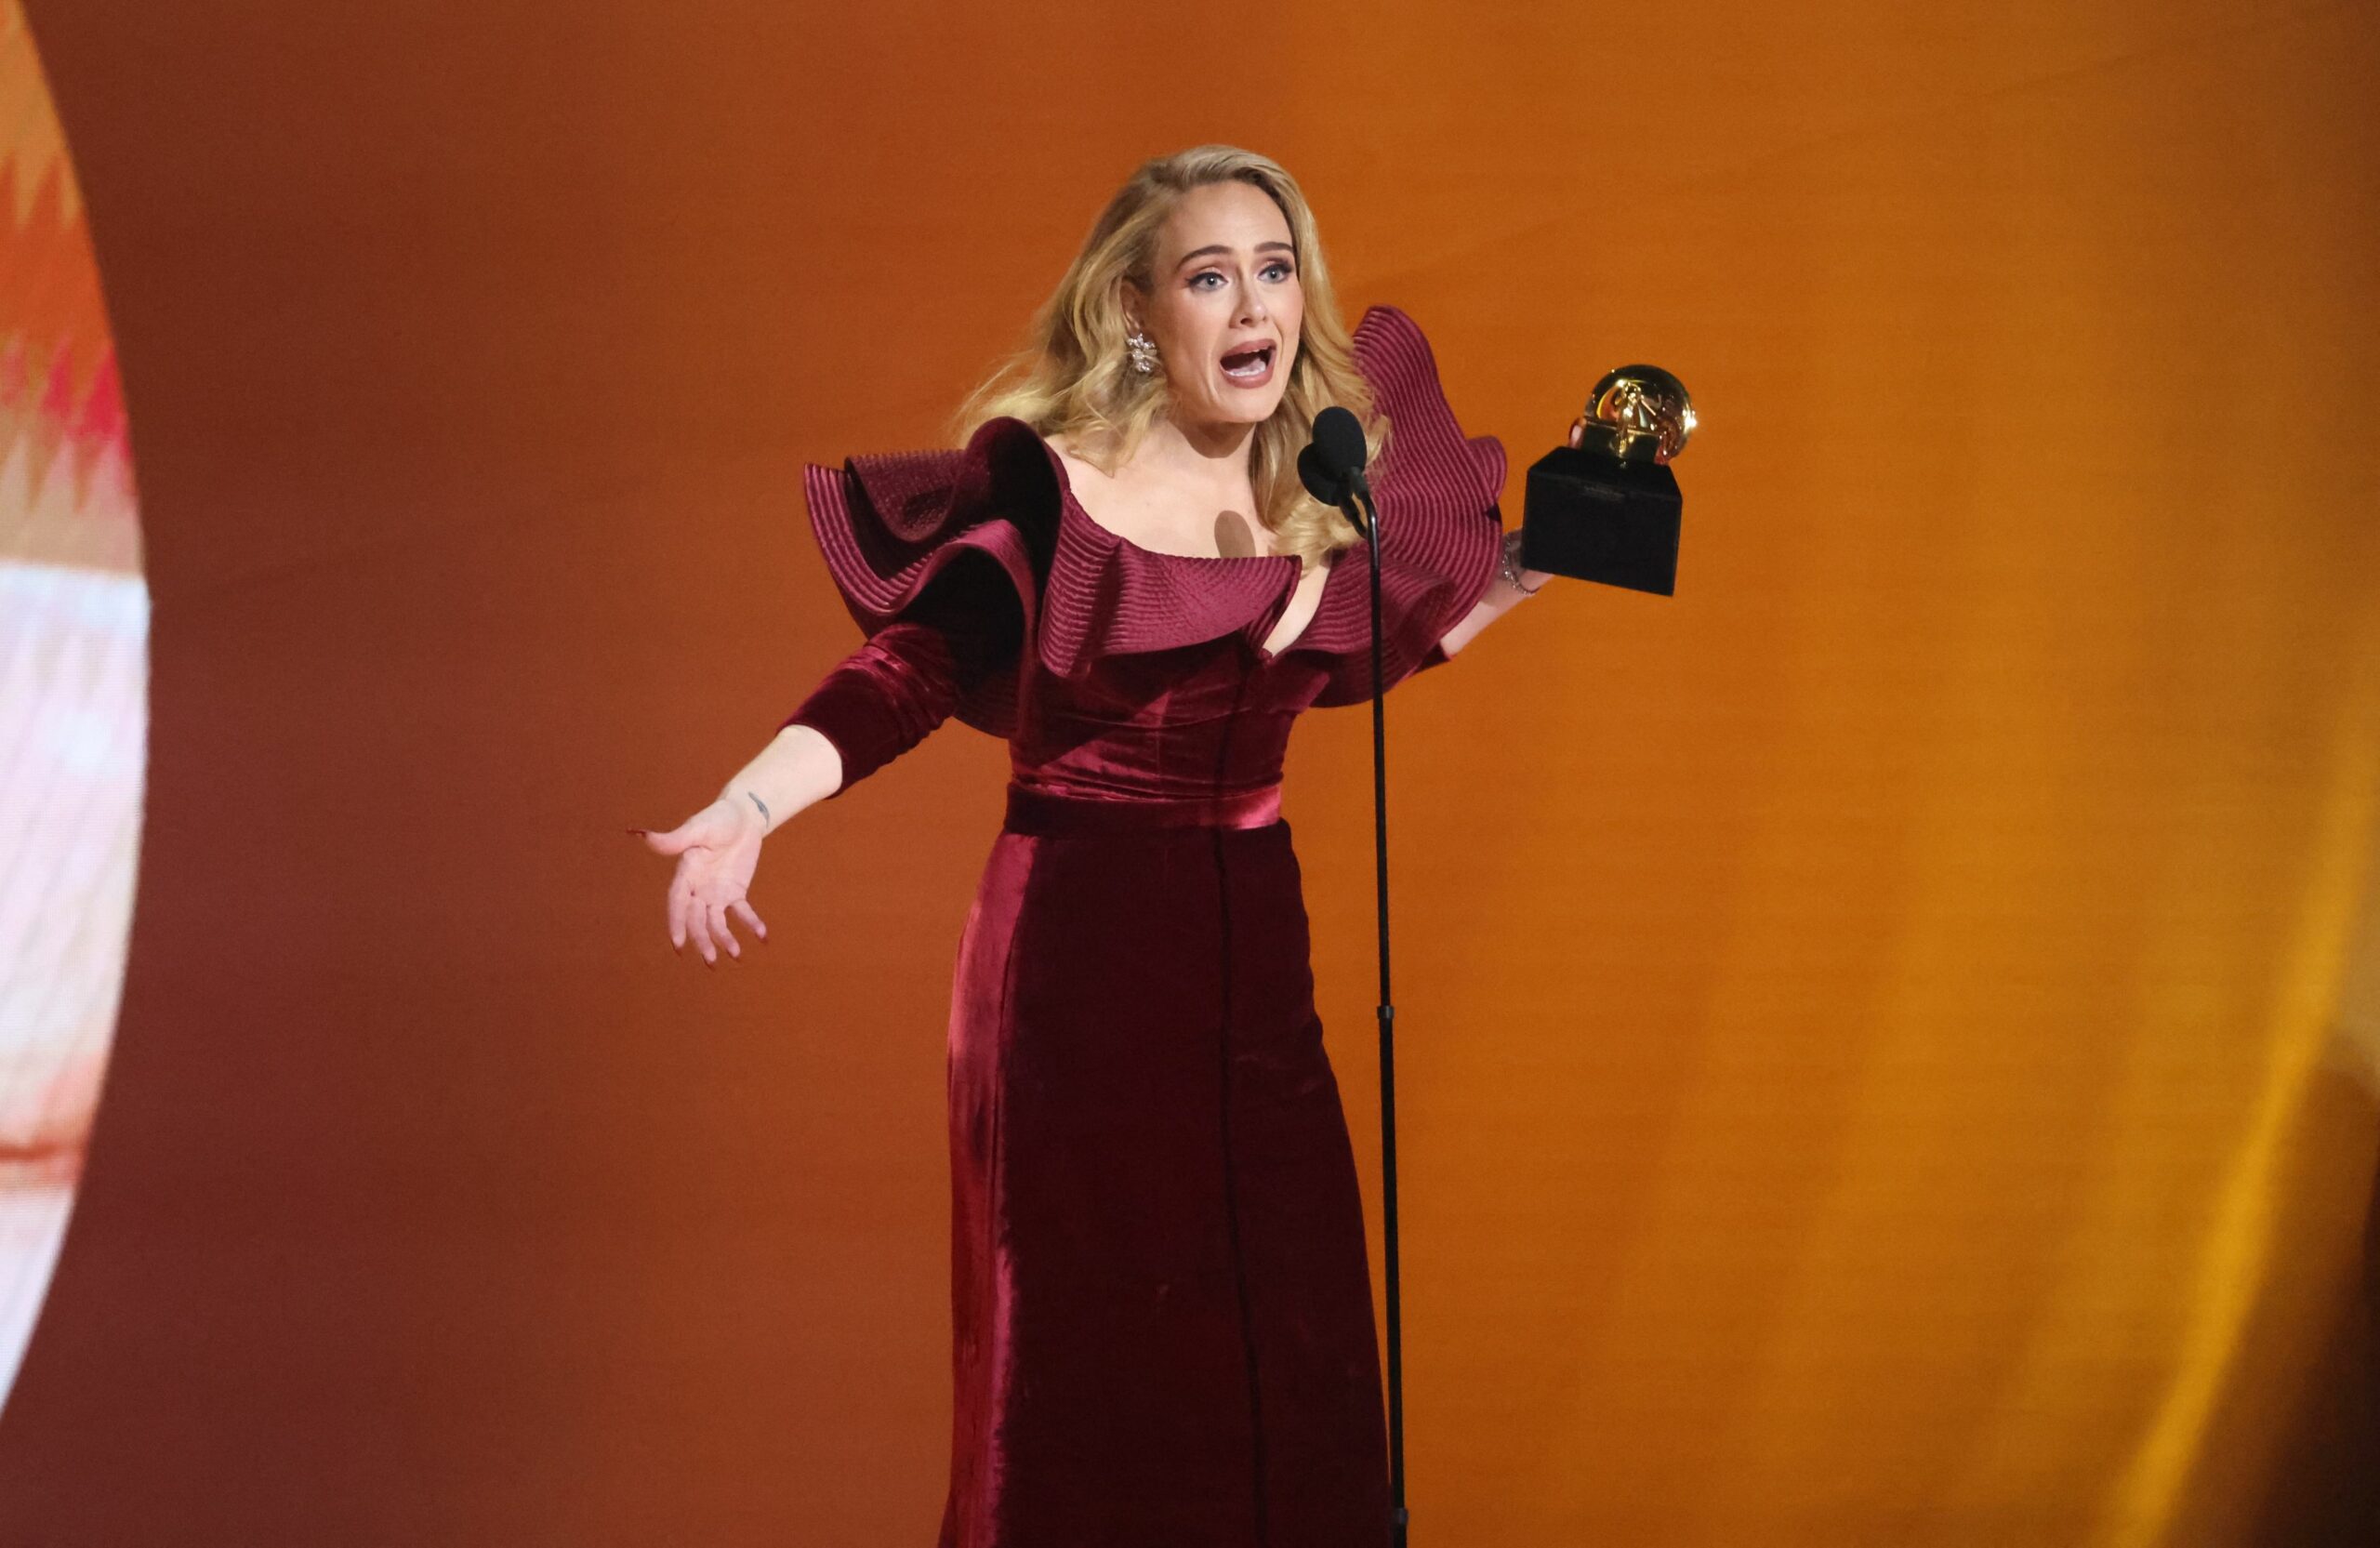 Slavna Adele snimljena u veljači / Reuters